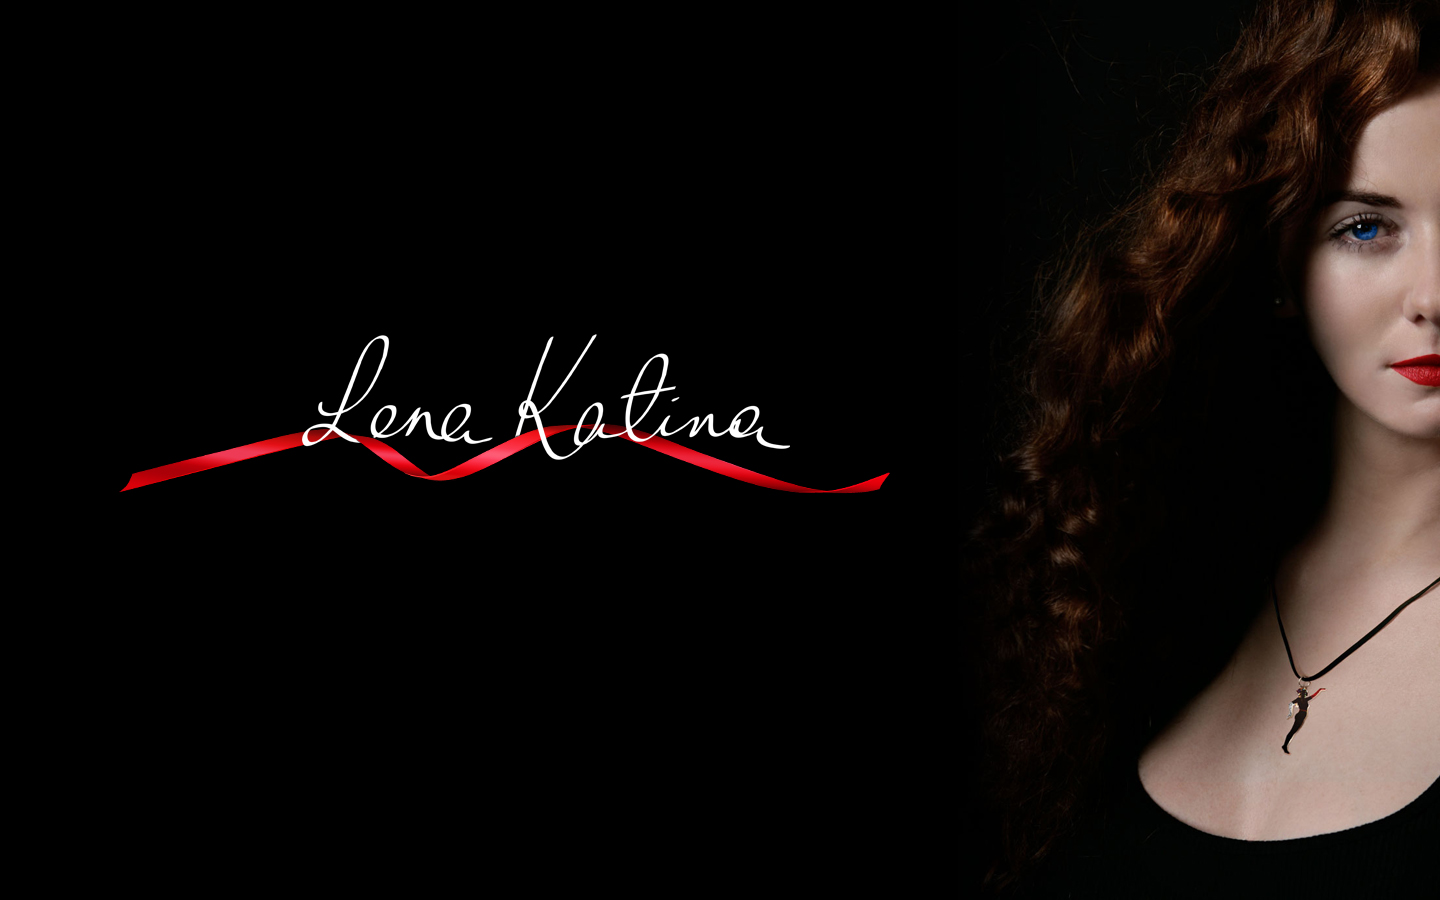 Lena Katina Wallpapers